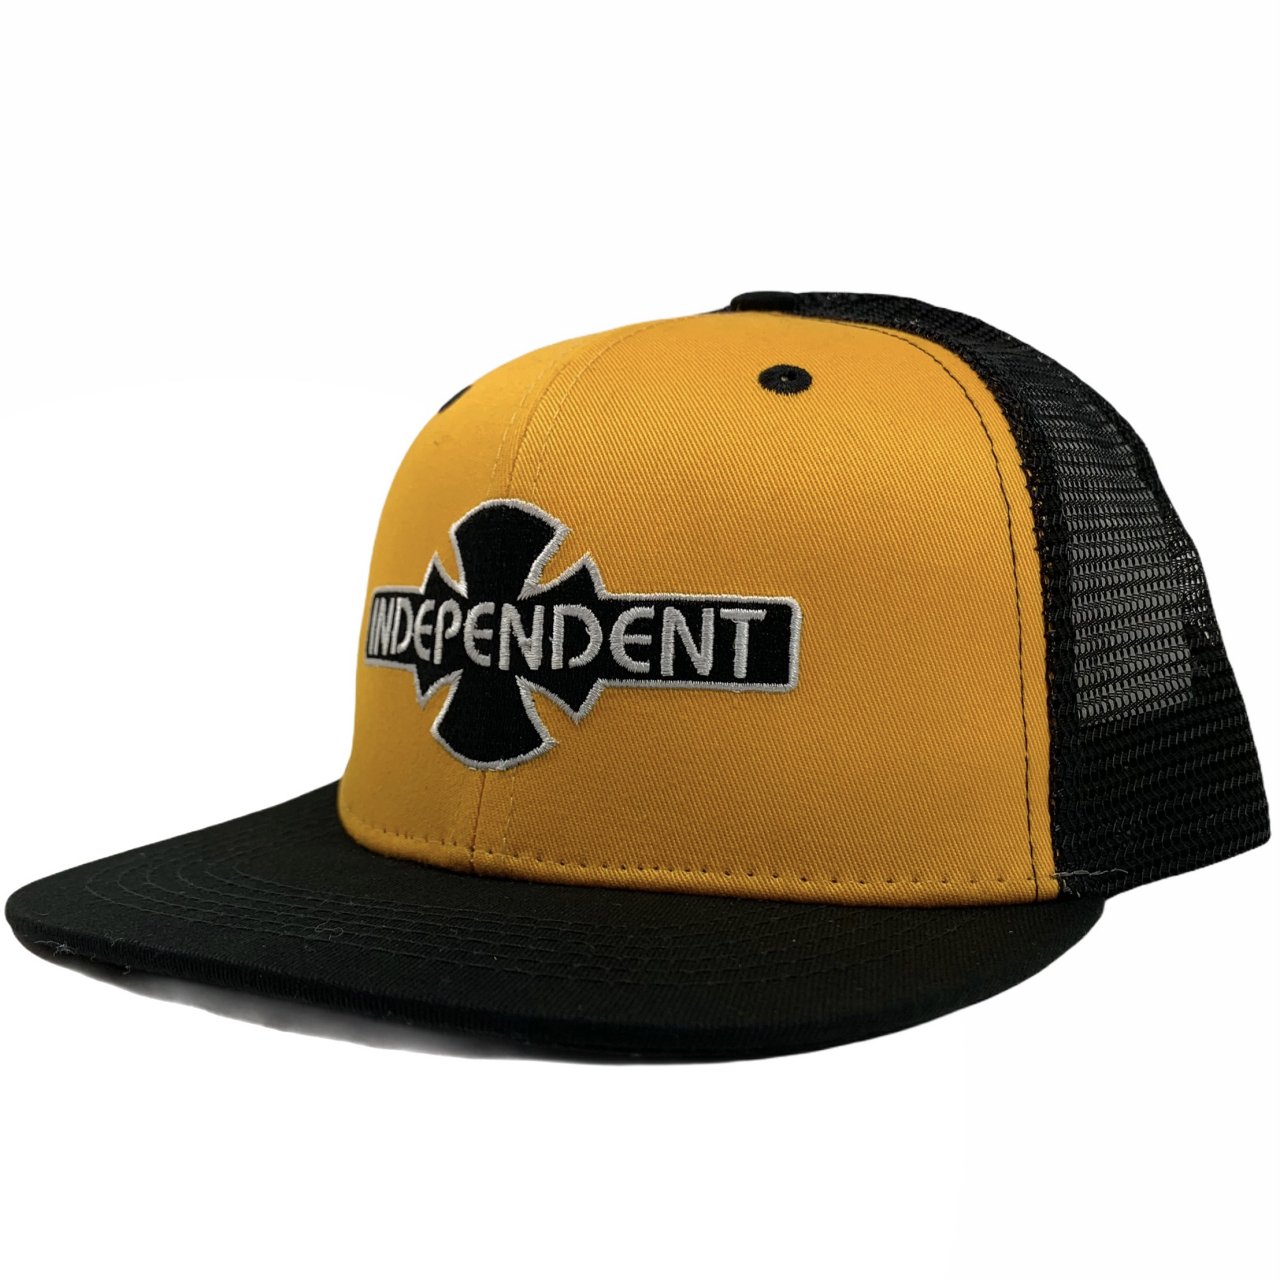 新品 INDEPENDENT O.G.B.C Trucker Mesh Hat (GOLD/BLACK) インディペンデント メッシュキャップ  トラッカーハット ロゴ 黄黒 ゴールド ブラック CAP - NEWJOKE ONLINE STORE